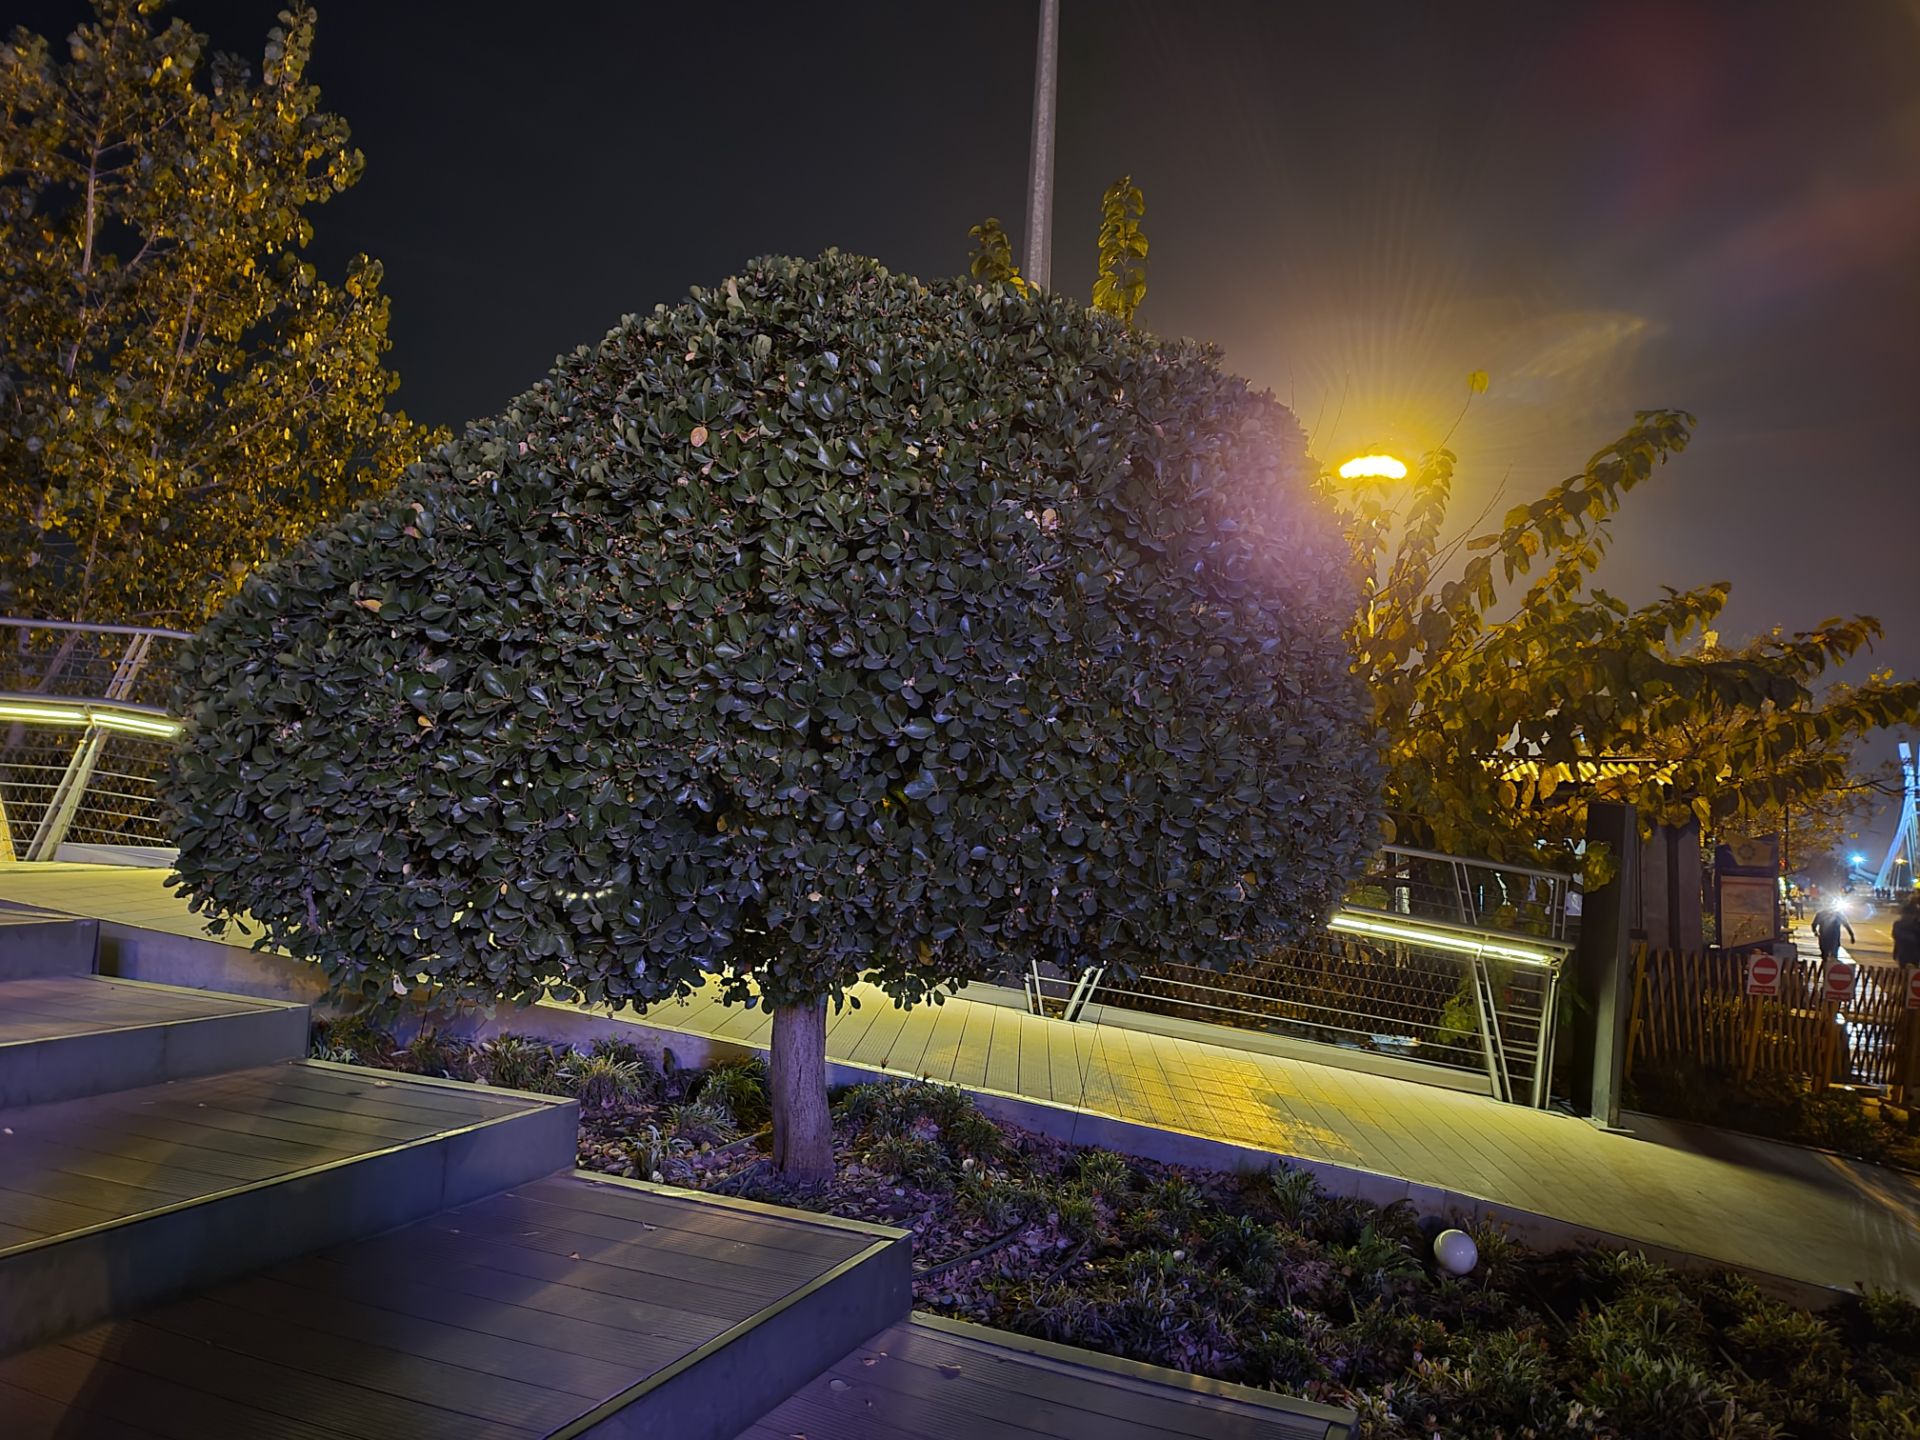 نمونه عکس دوربین واید گلکسی زد فولد ۲ در تاریکی - درختی در پارک آب و آتش تهران